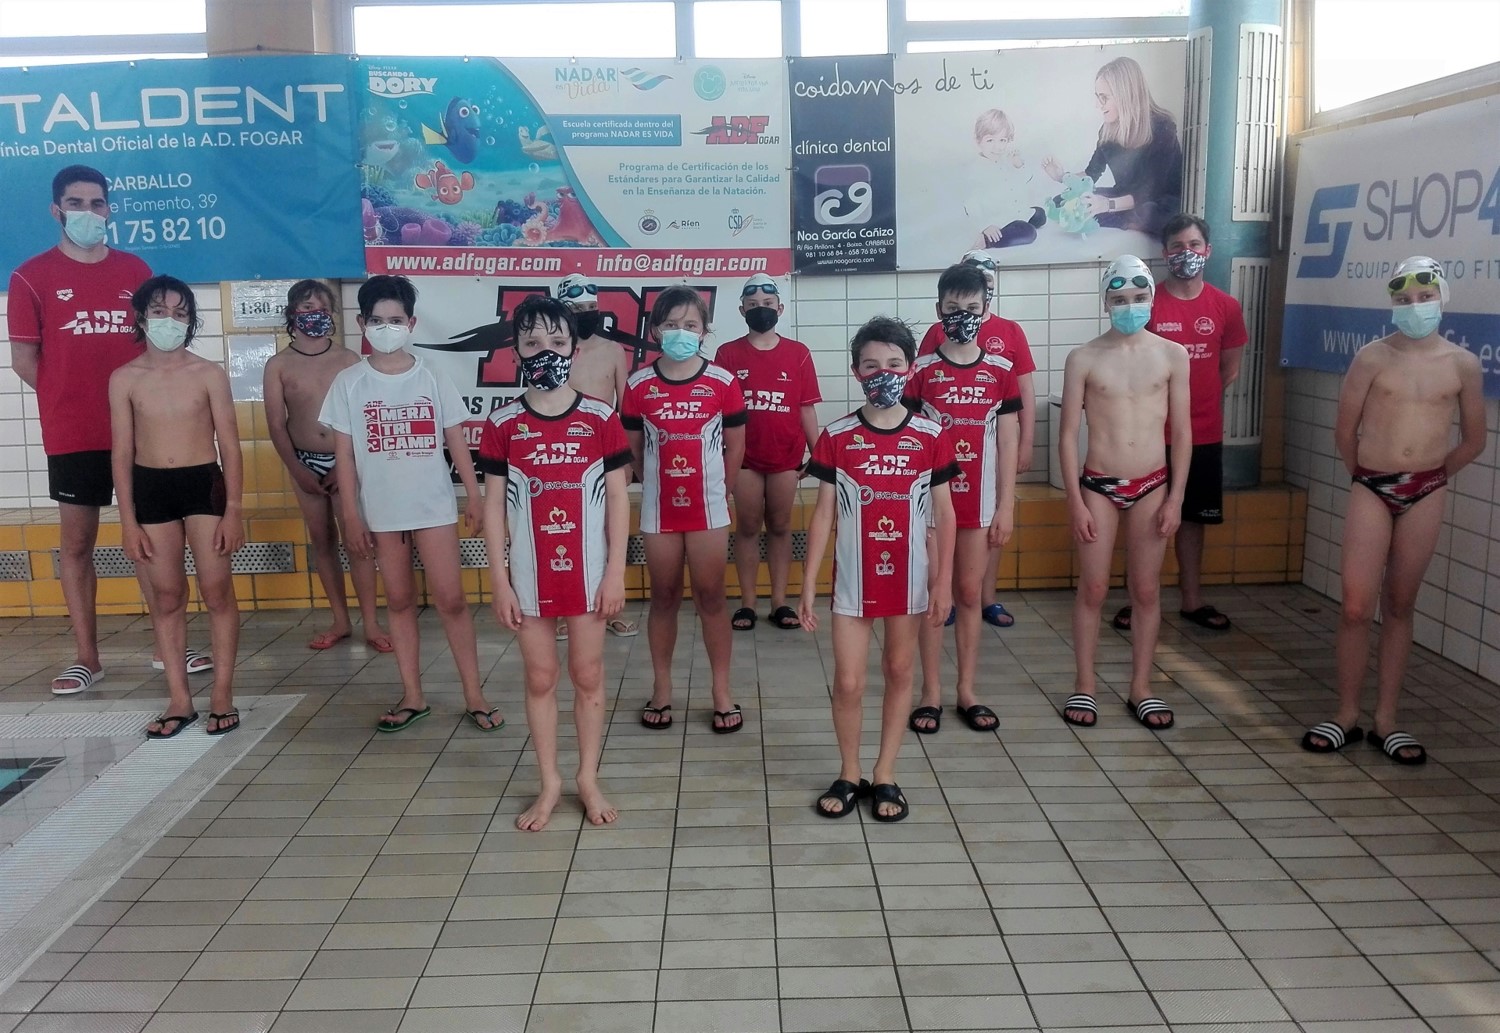 24 d@s nos@s nadadores-as compiten en Carballo e Ourense